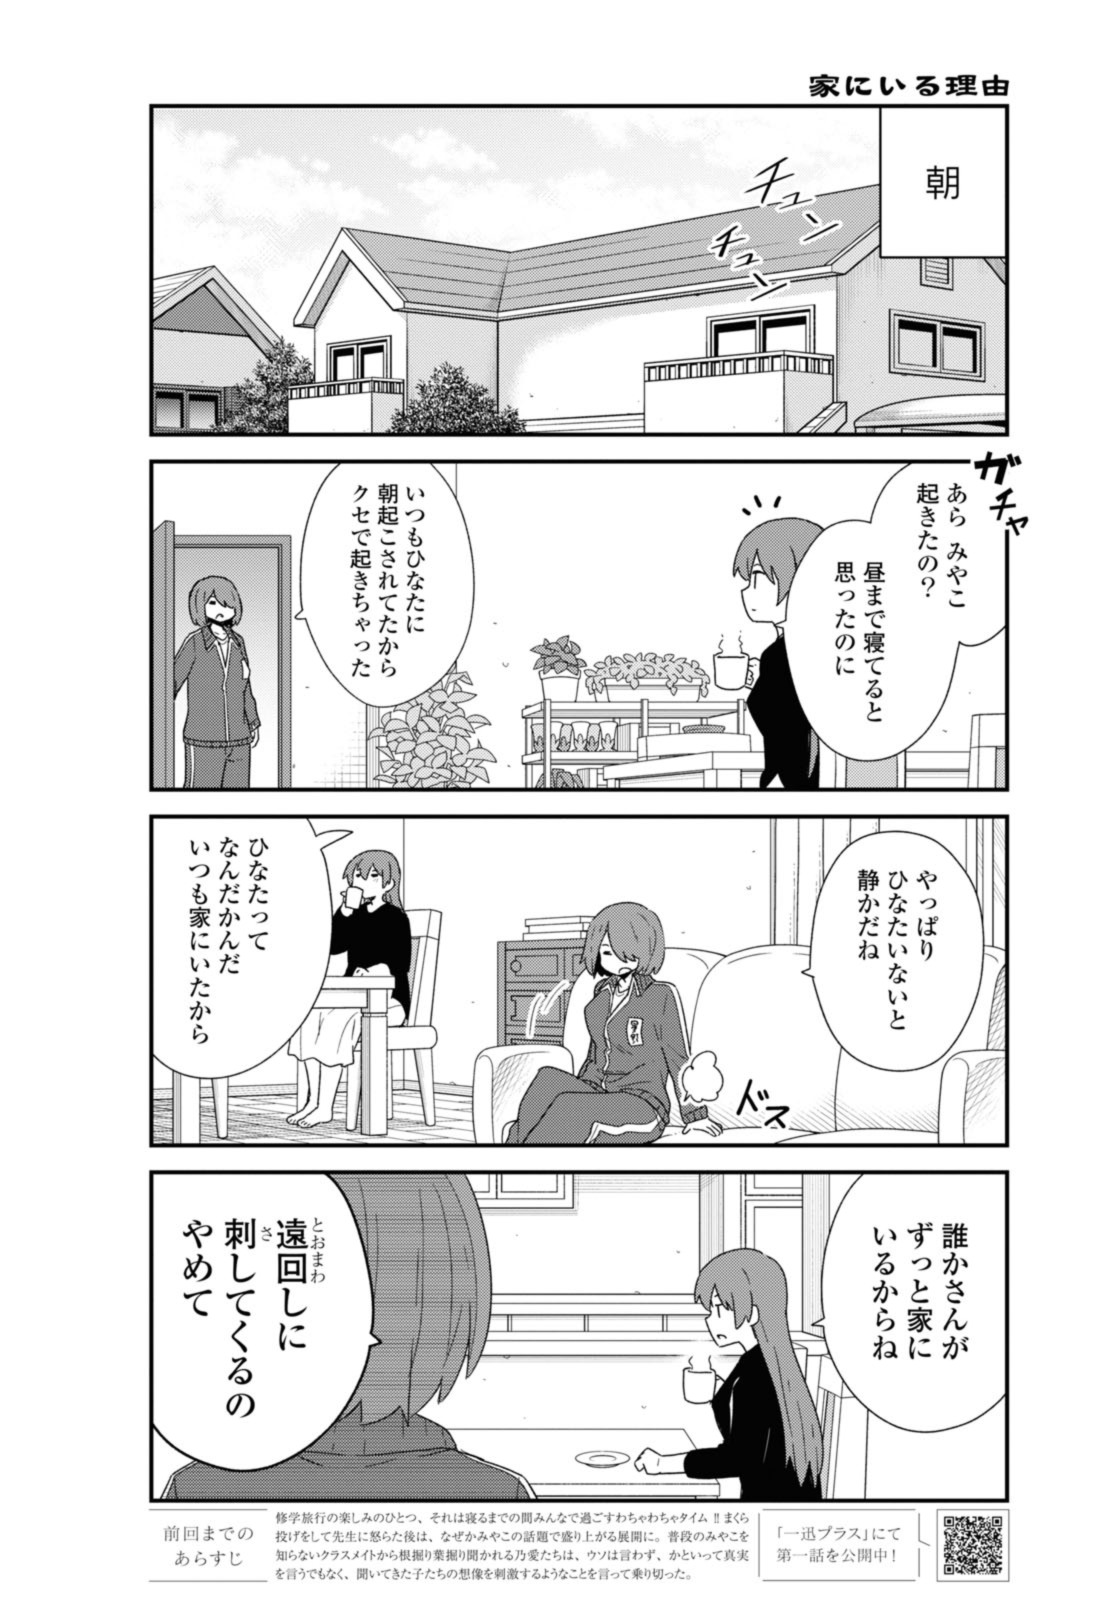 Watashi ni Tenshi ga Maiorita! - Chapter 107 - Page 2